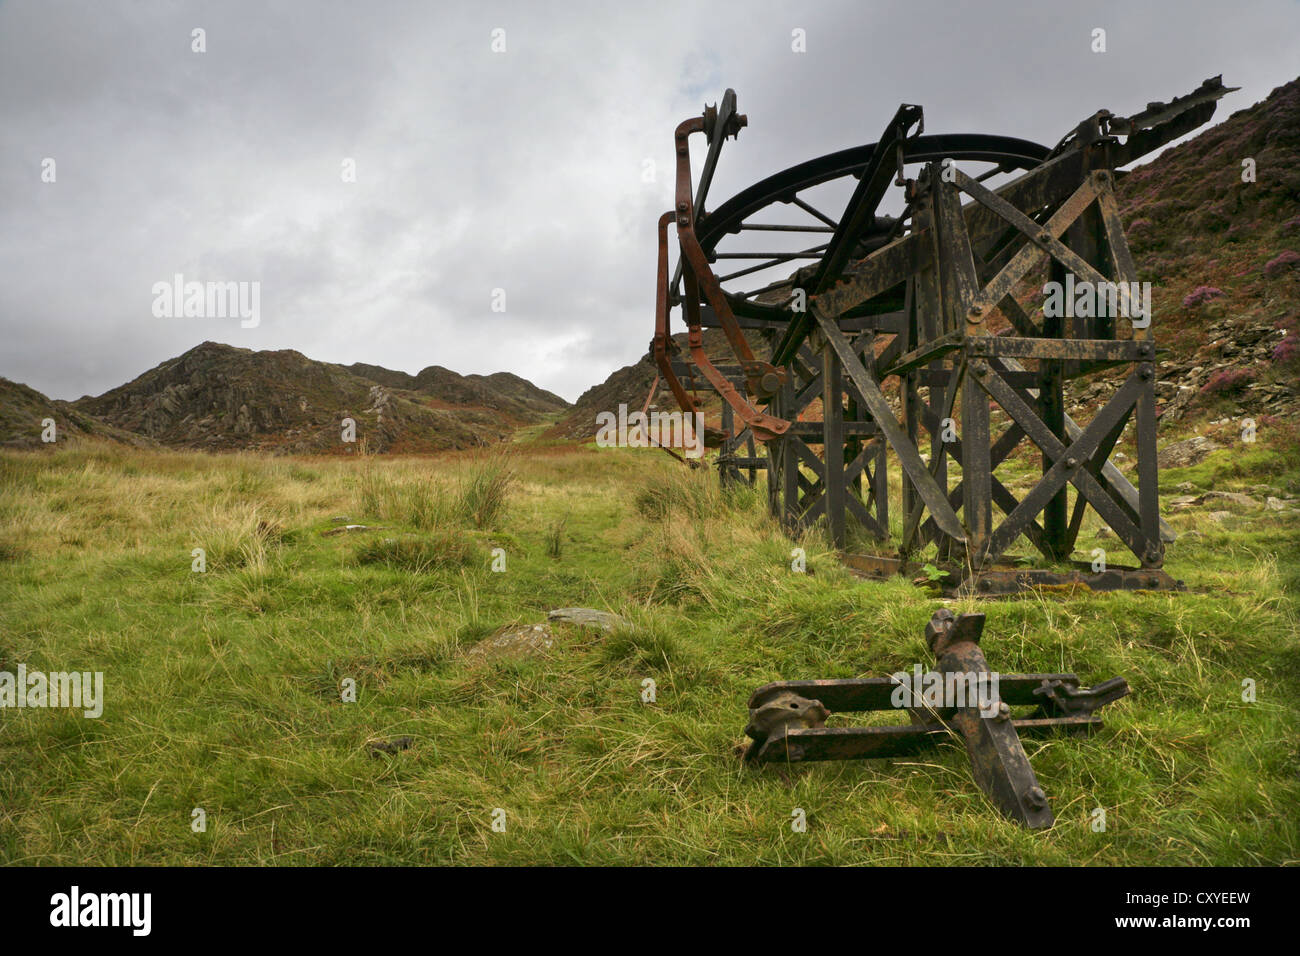 Luftseilbahn Maschinen aus den 19. Jahrhundert Kupfer-Minen in Cwm Bychan, Snowdonia, Nordwales aufgegeben. Stockfoto